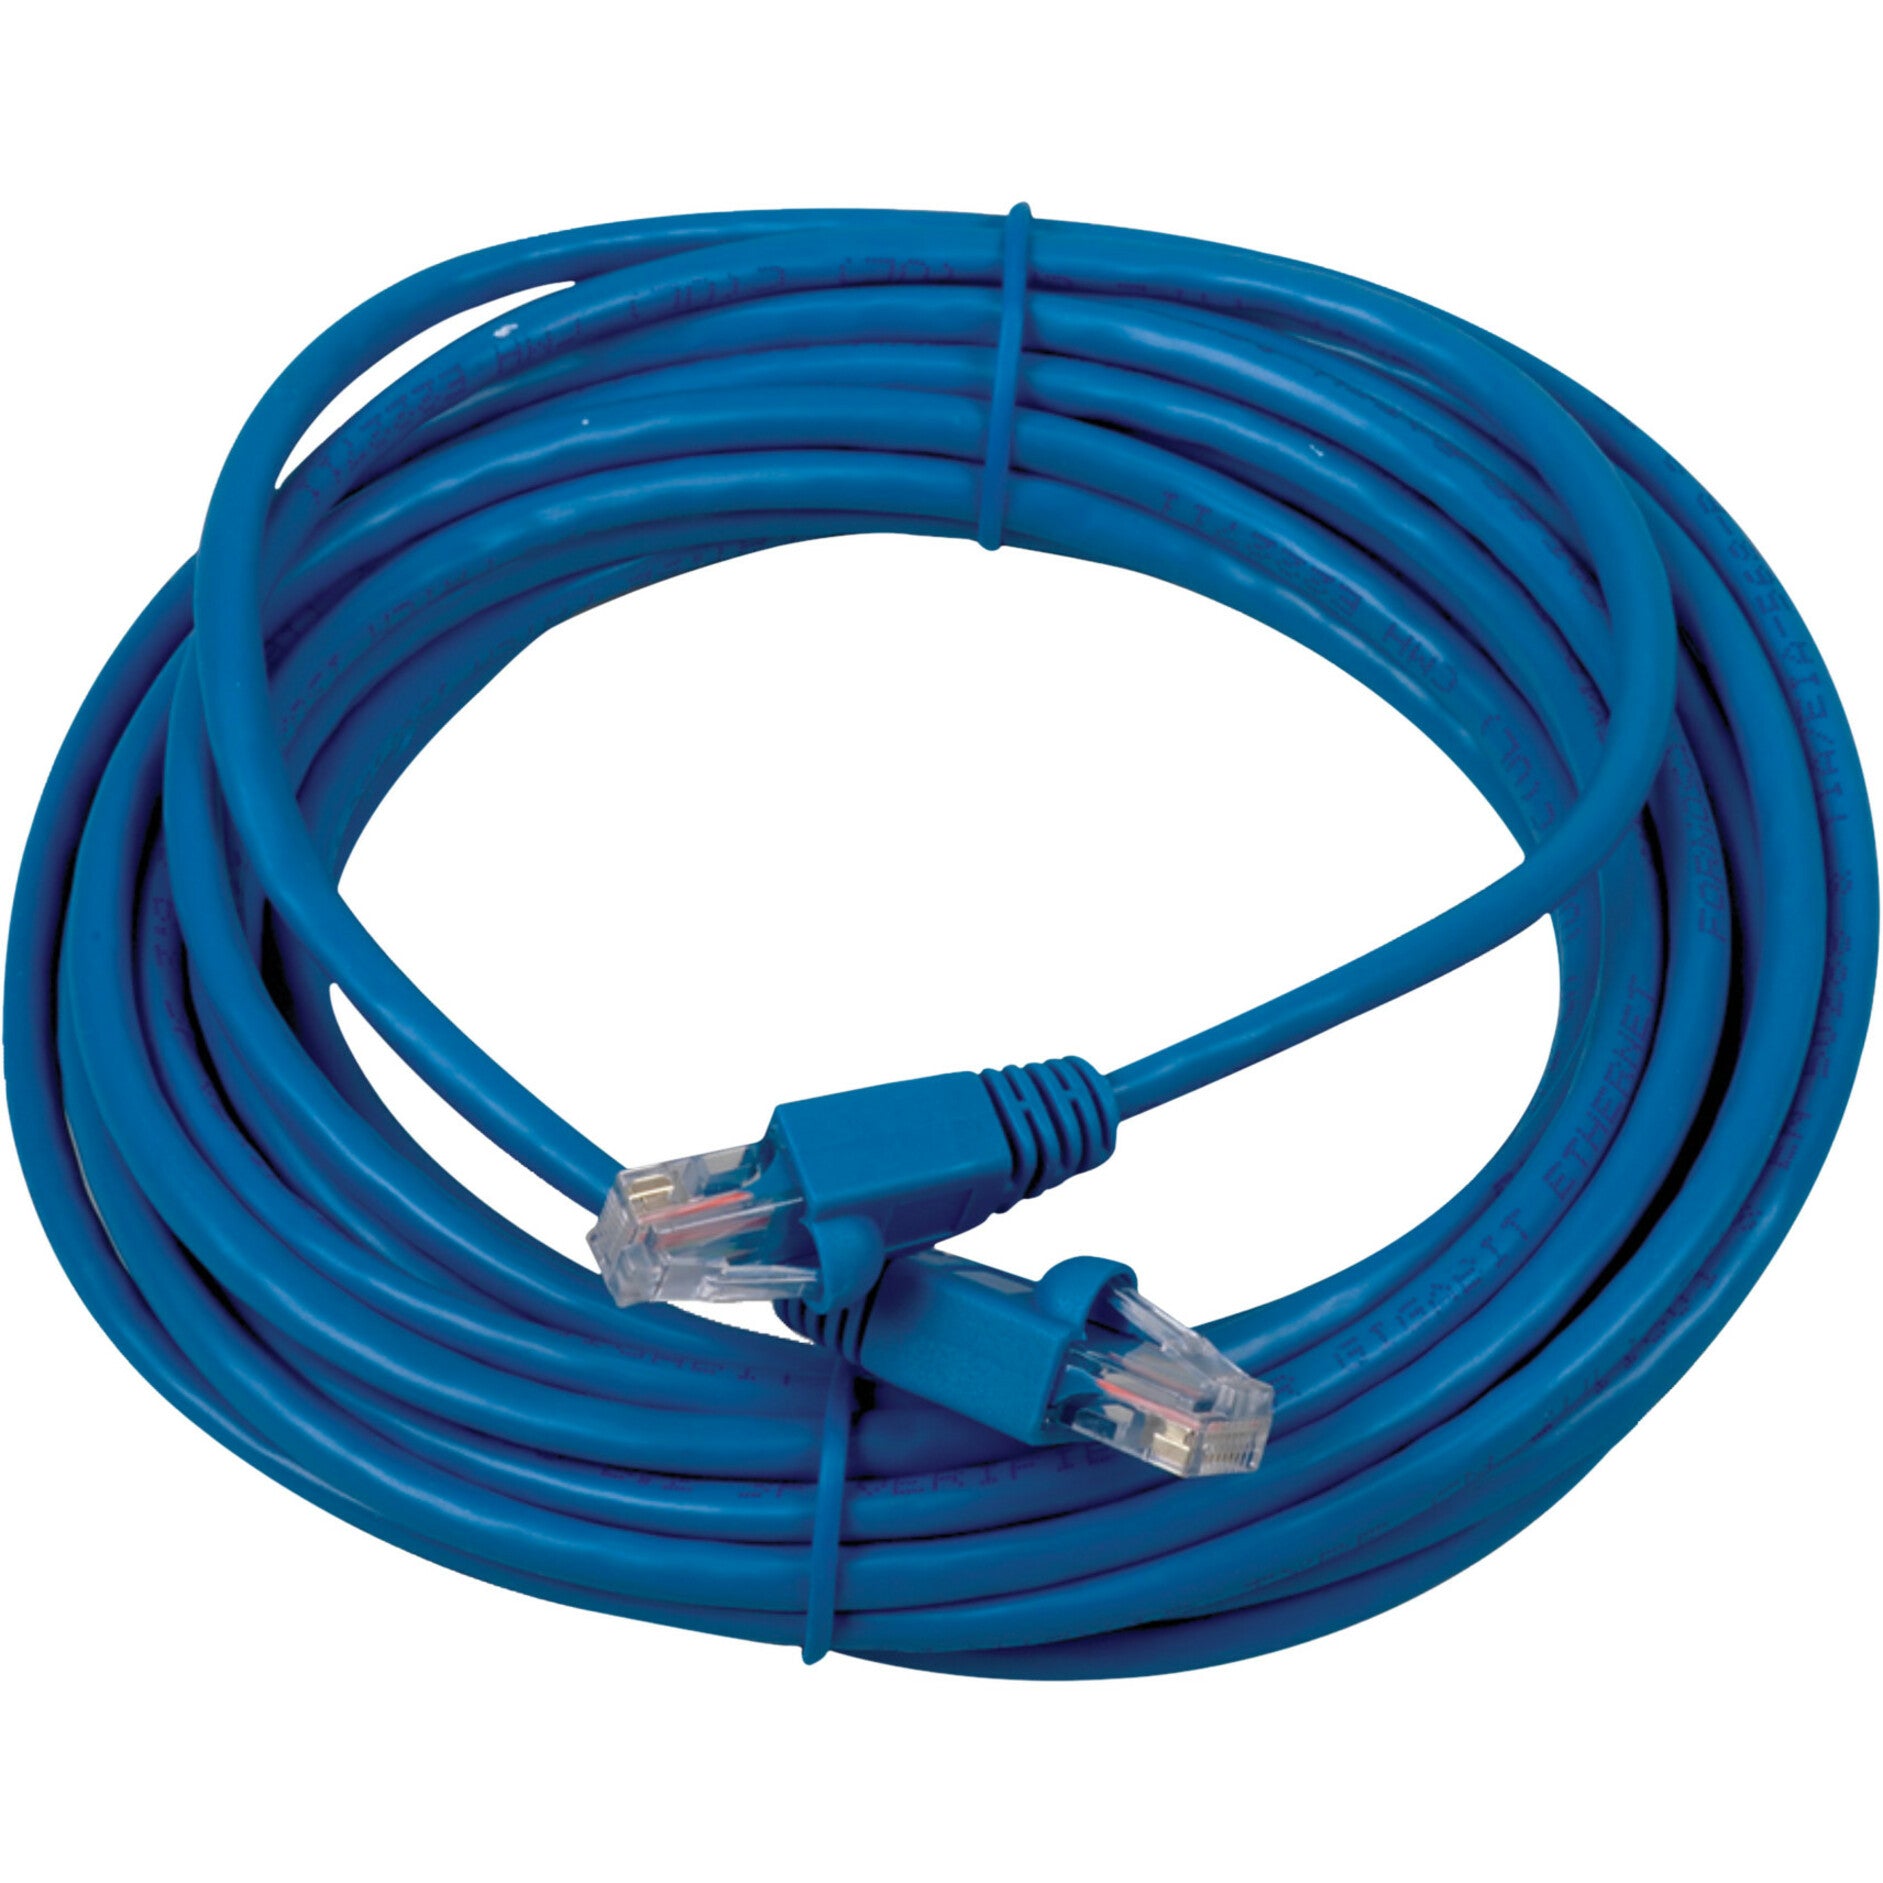 RCA TPH532BR Cat5e 25英尺 网络 电缆 - 蓝色， 高速 以太网 电缆 用于可靠的 网络 连接 品牌名称: RCA 品牌名称翻译: RCA